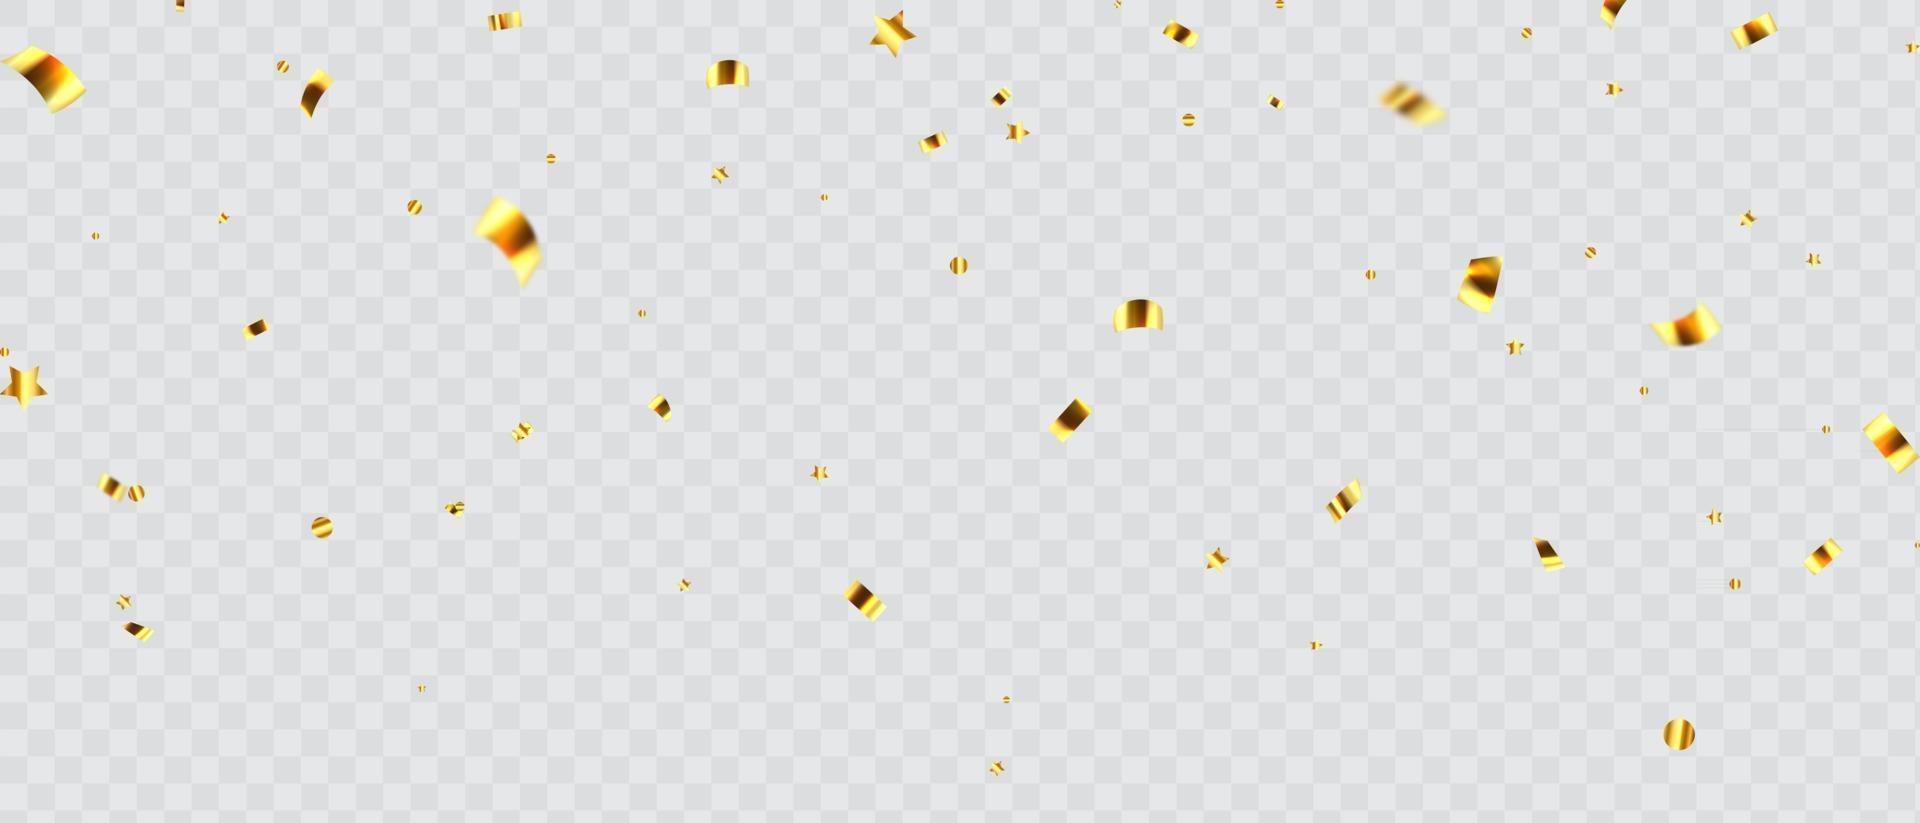 projeto de celebração de festa de fundo abstrato com confete dourado vetor